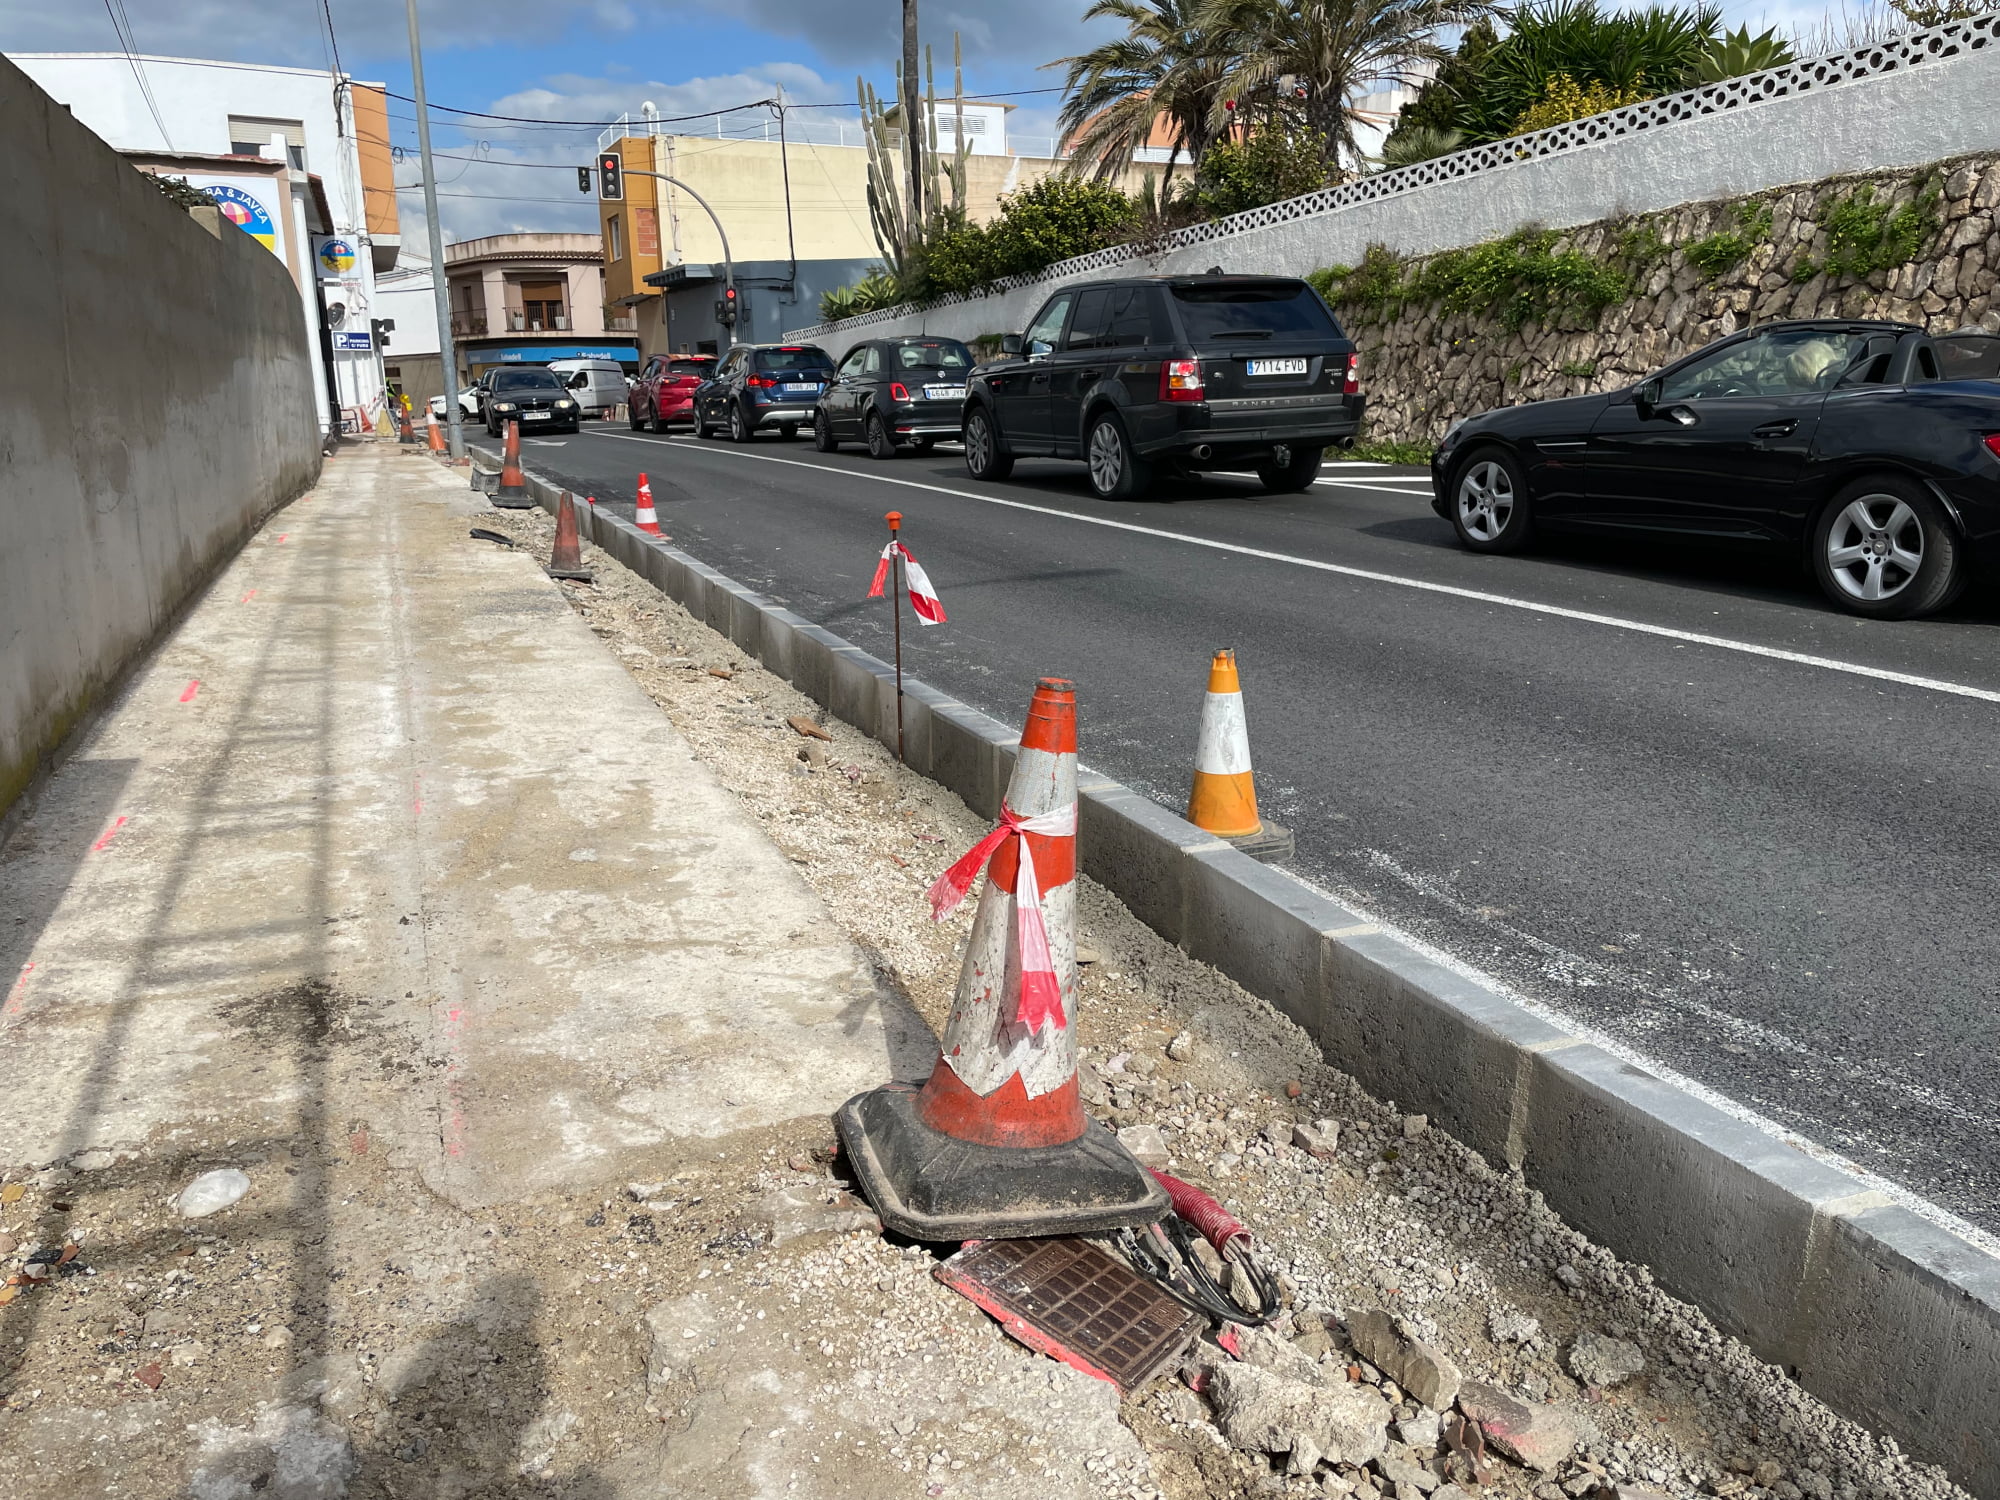 Mejora de Seguridad Vial en El Poble Nou de Benitatxell